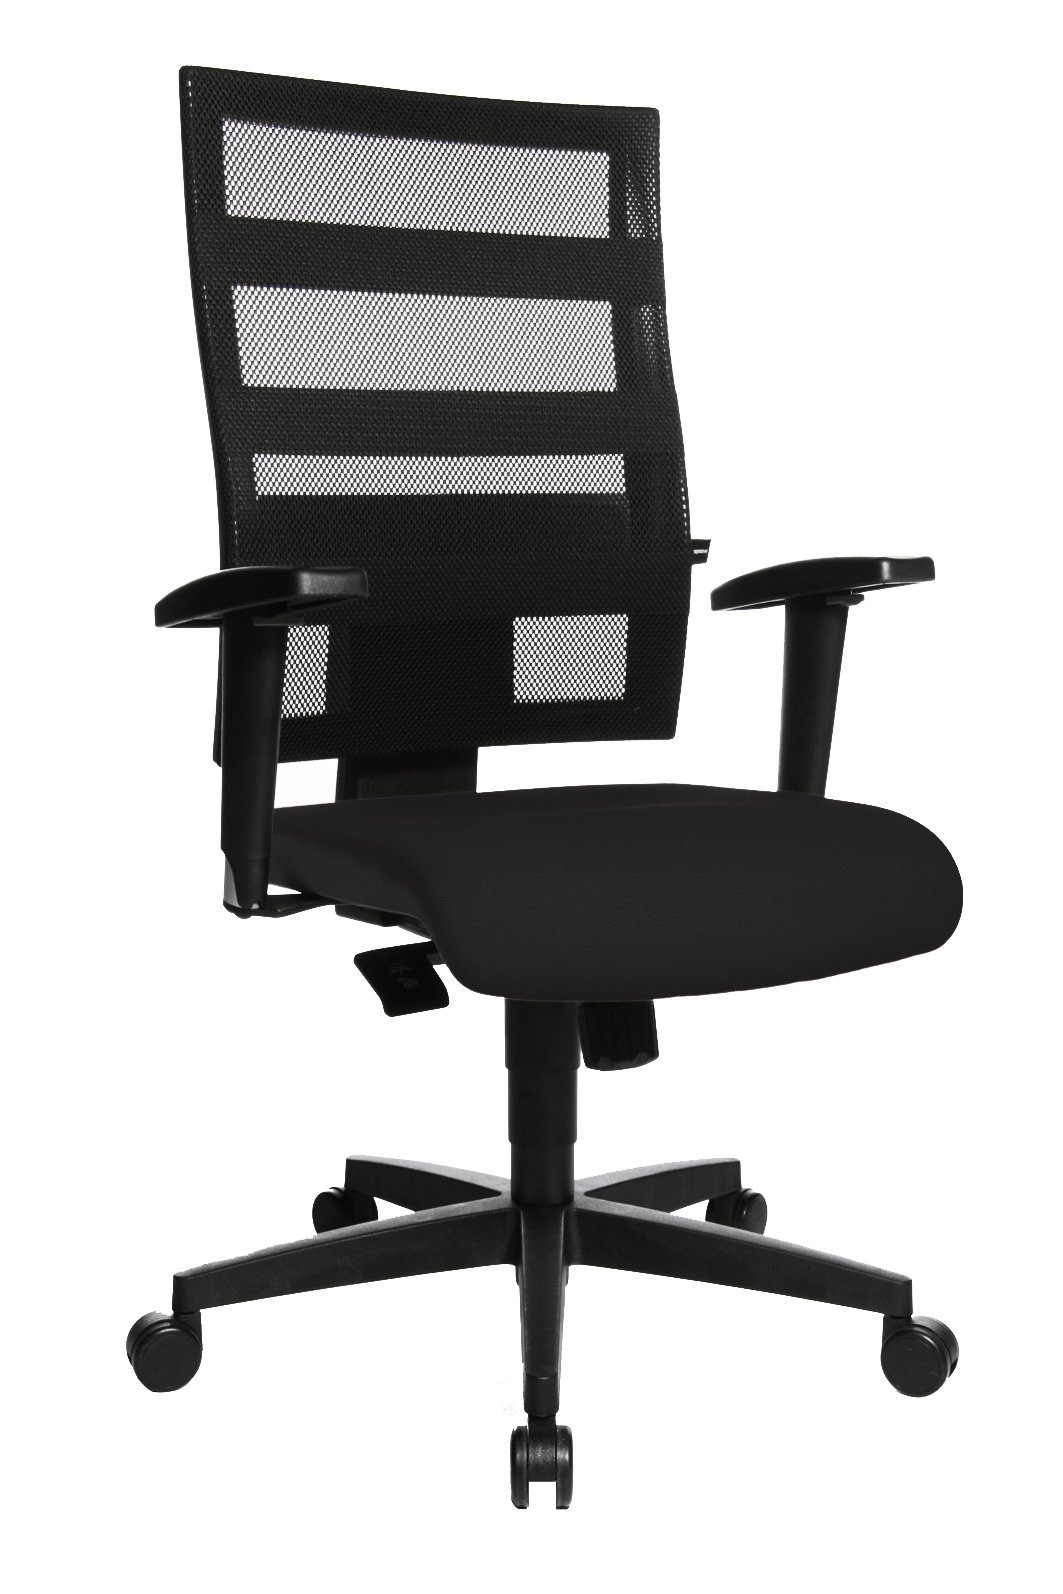 Steelboxx Drehstuhl Bürodrehstuhl mit Armlehnen, Netzrücken, Kunststofffußkreuz, GS zertif (1), Höhenverstellbar, extra komfortable, rundum gepolsterte Rückenlehne schwarz